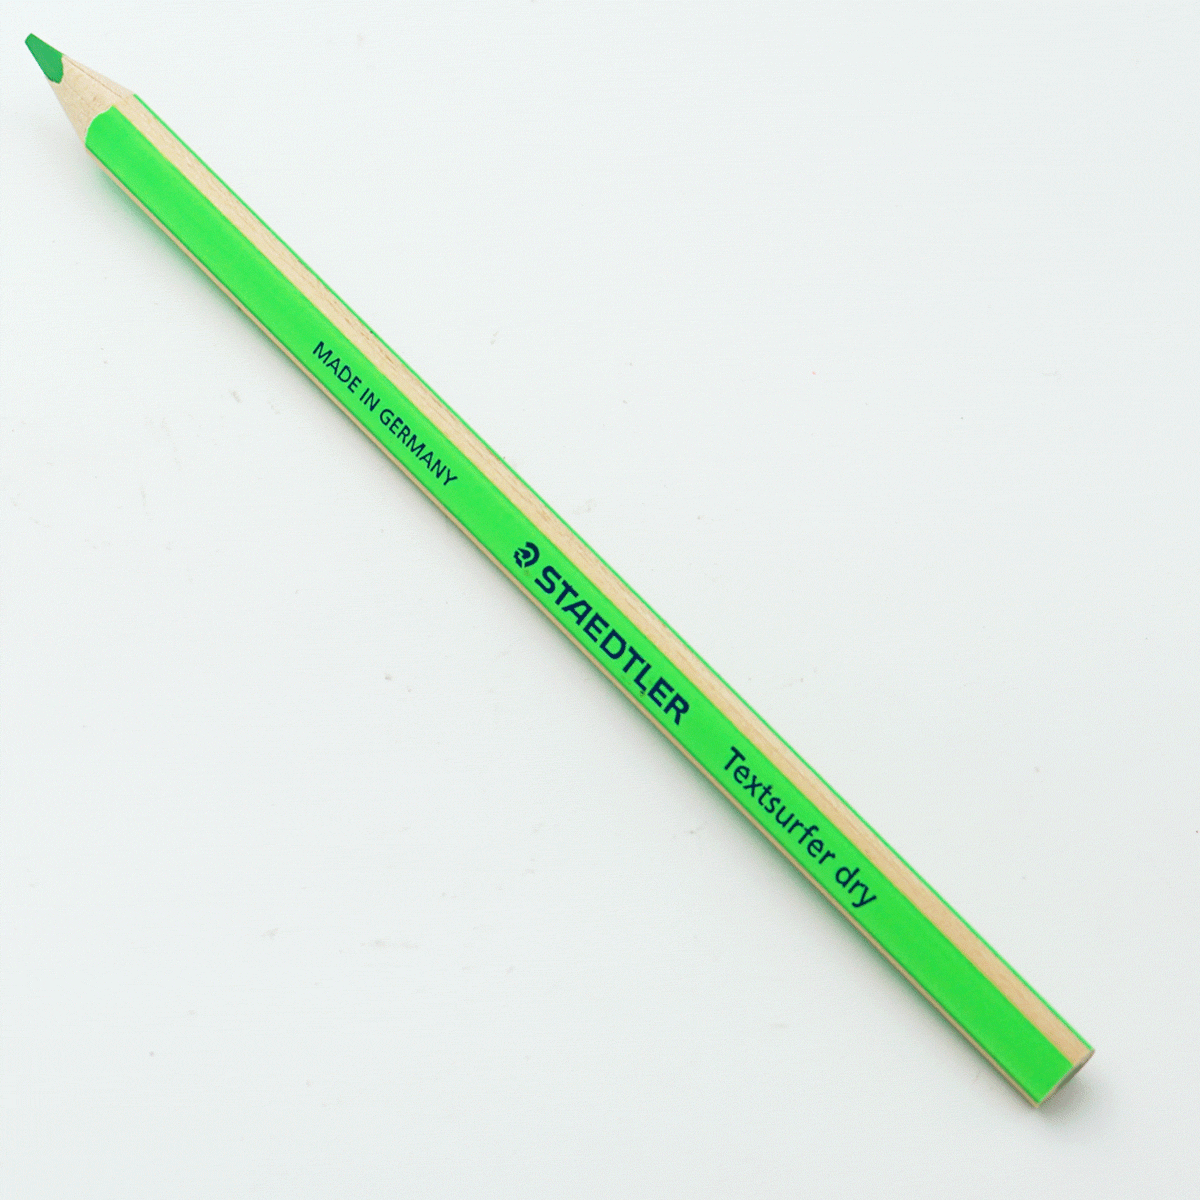 Staedtler 128 64-05 Green Color Highlighter Pencil SKU 24401